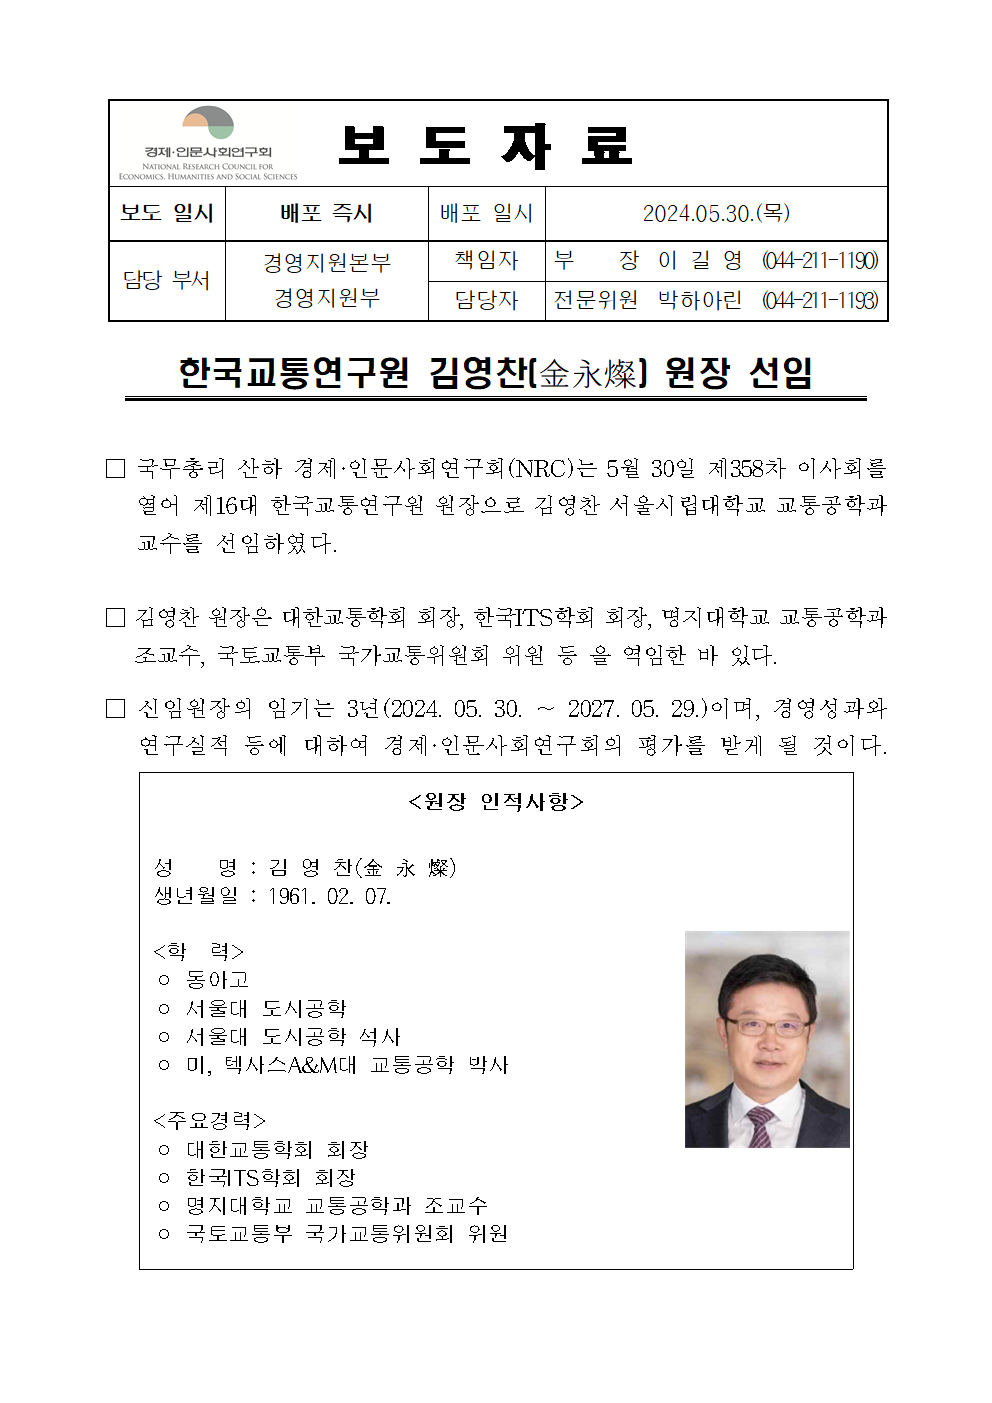 한국교통연구원 김영찬(金永燦) 원장 선임 - 자세한 내용은 하단 참조